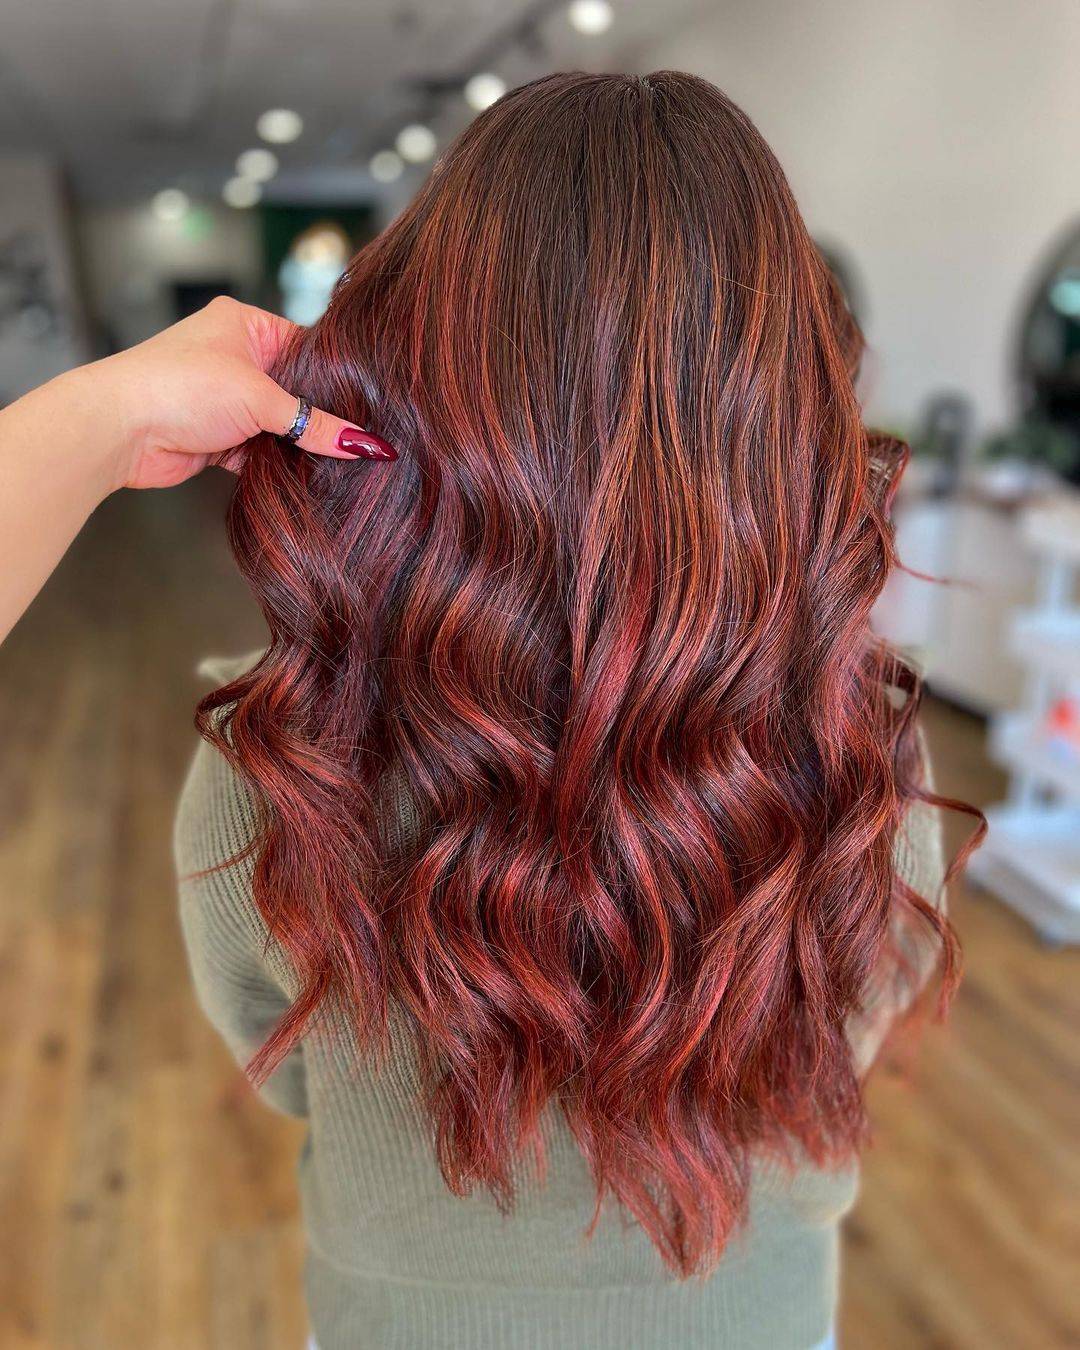 Burgundy hair color 406 burgundy hair color | burgundy hair color for women | burgundy hair color highlights Burgundy Hair Color